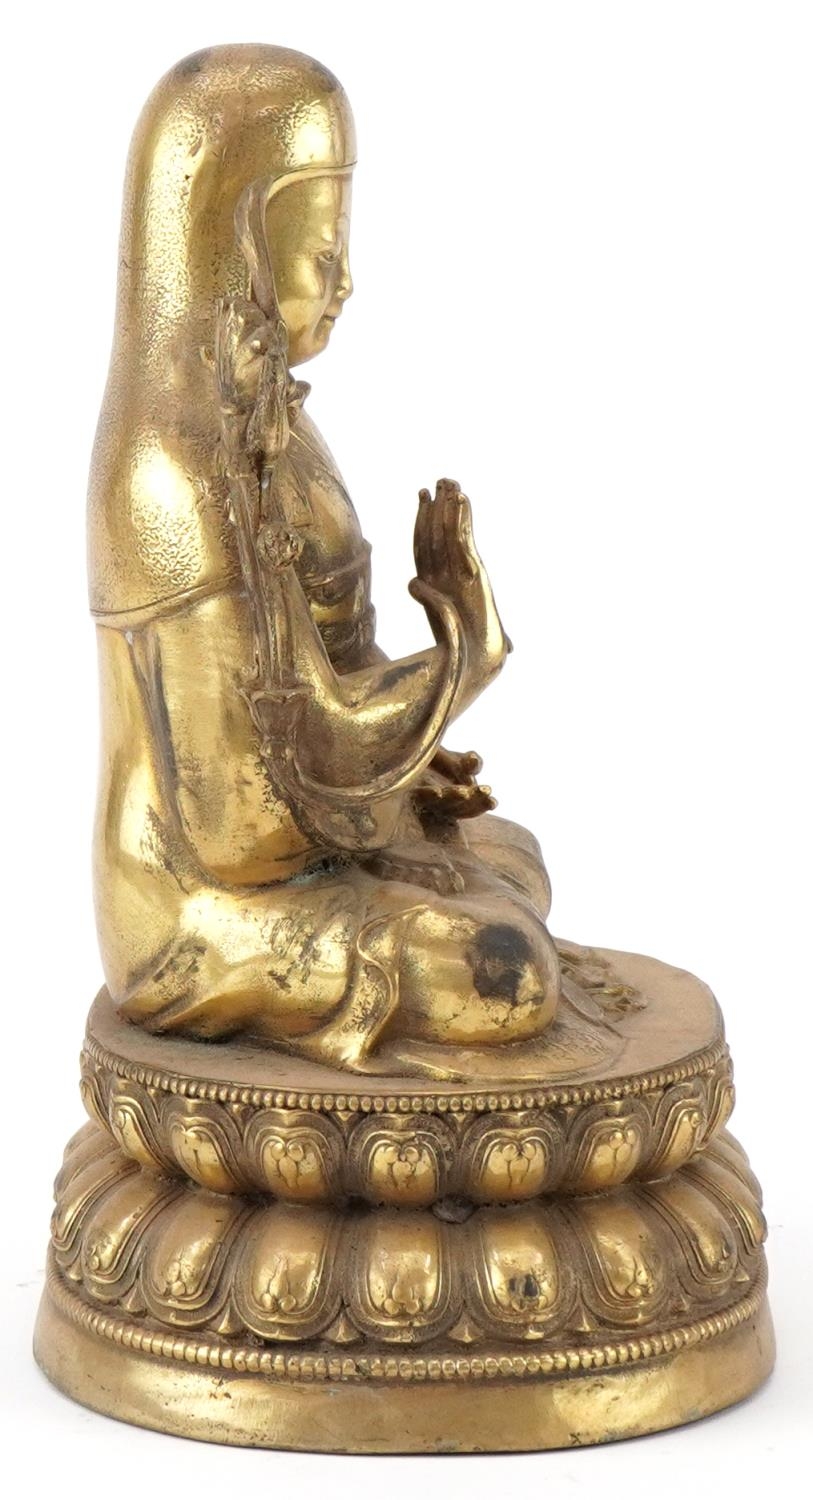 Chino Tibetan gilt bronze Buddha, 24cm high - Image 5 of 7